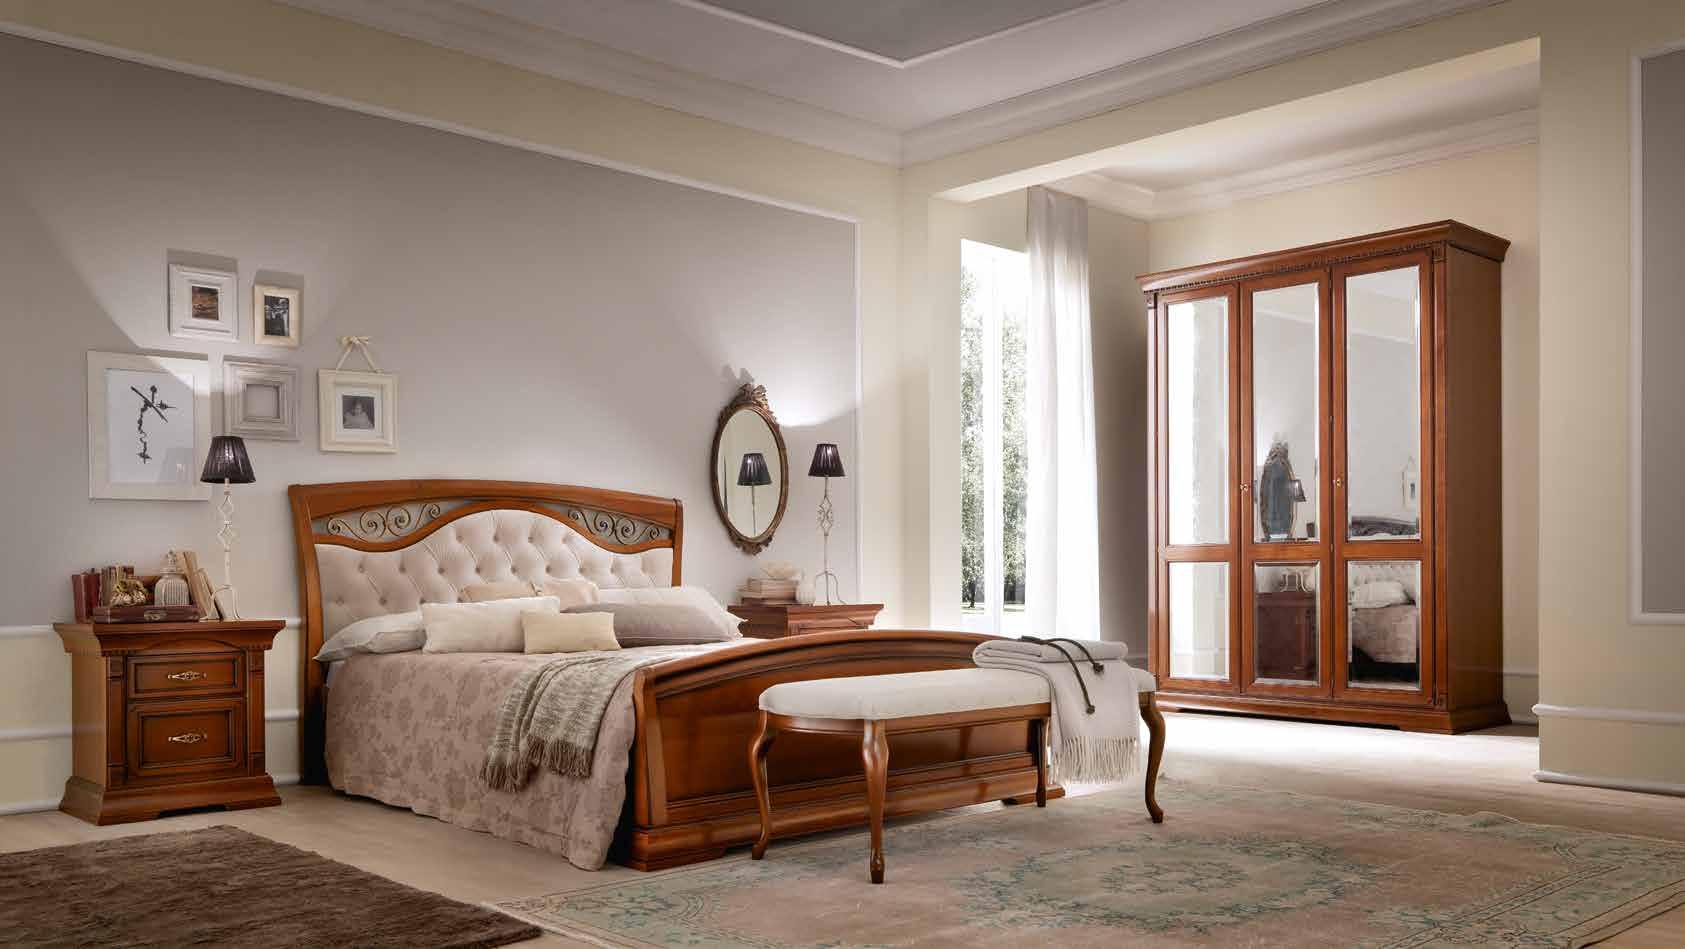 Кровать Prama Palazzo Ducale ciliegio, двуспальная, с мягким изголовьем, с ковкой, цвет: вишня, 180x200 см (71CI65LT)71CI65LT